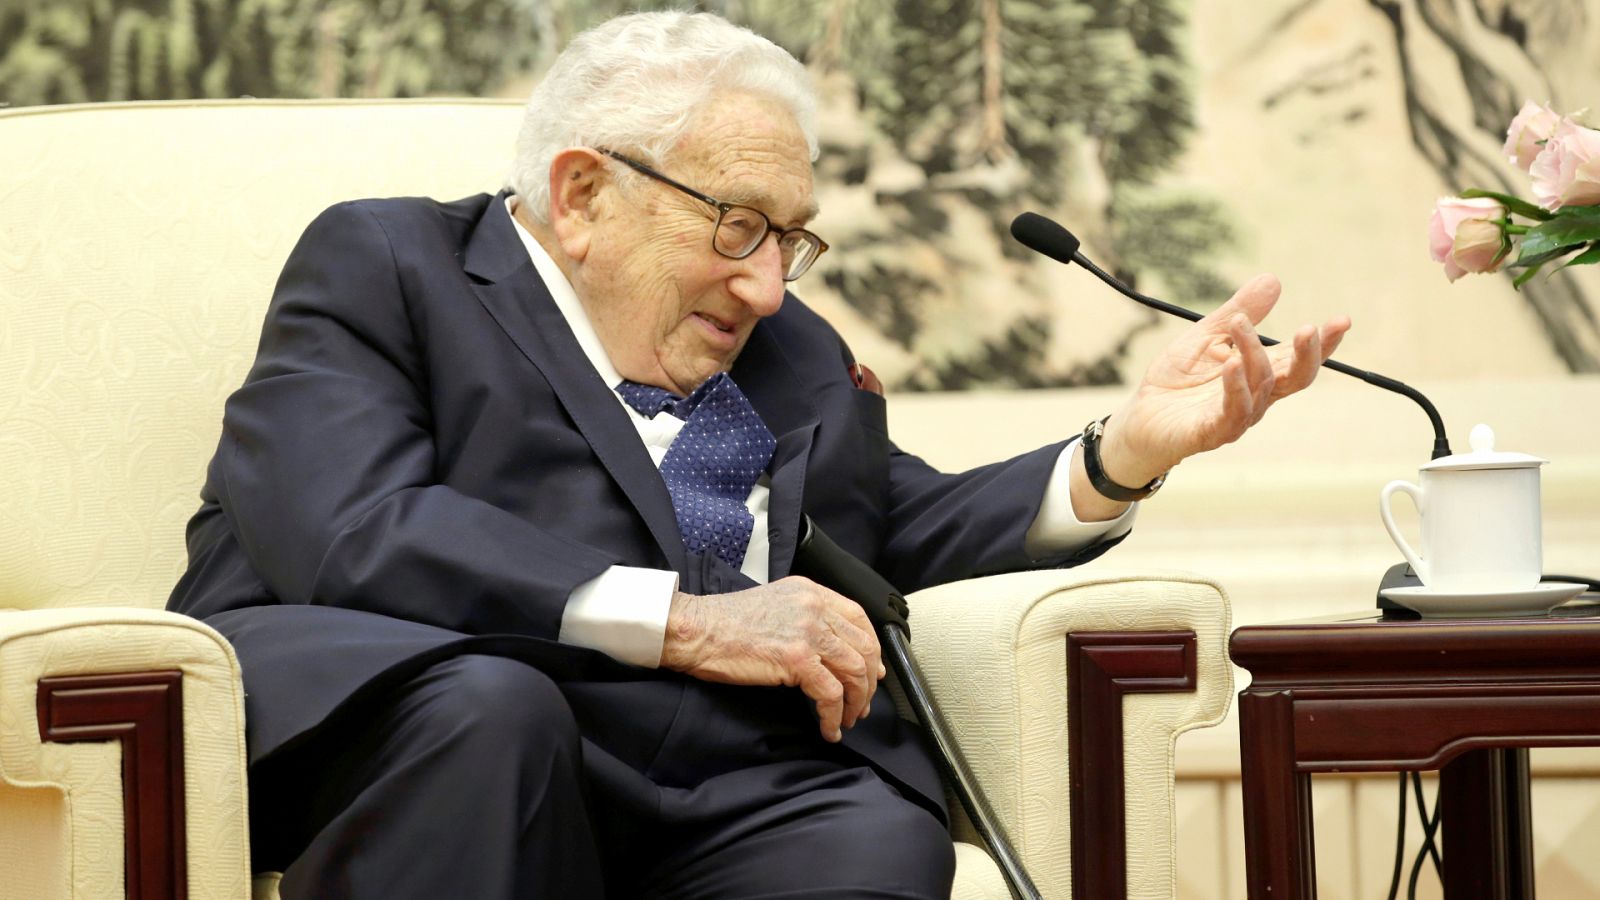 Vídeo: Kissinger cumple 100 años agrandando un mito roto